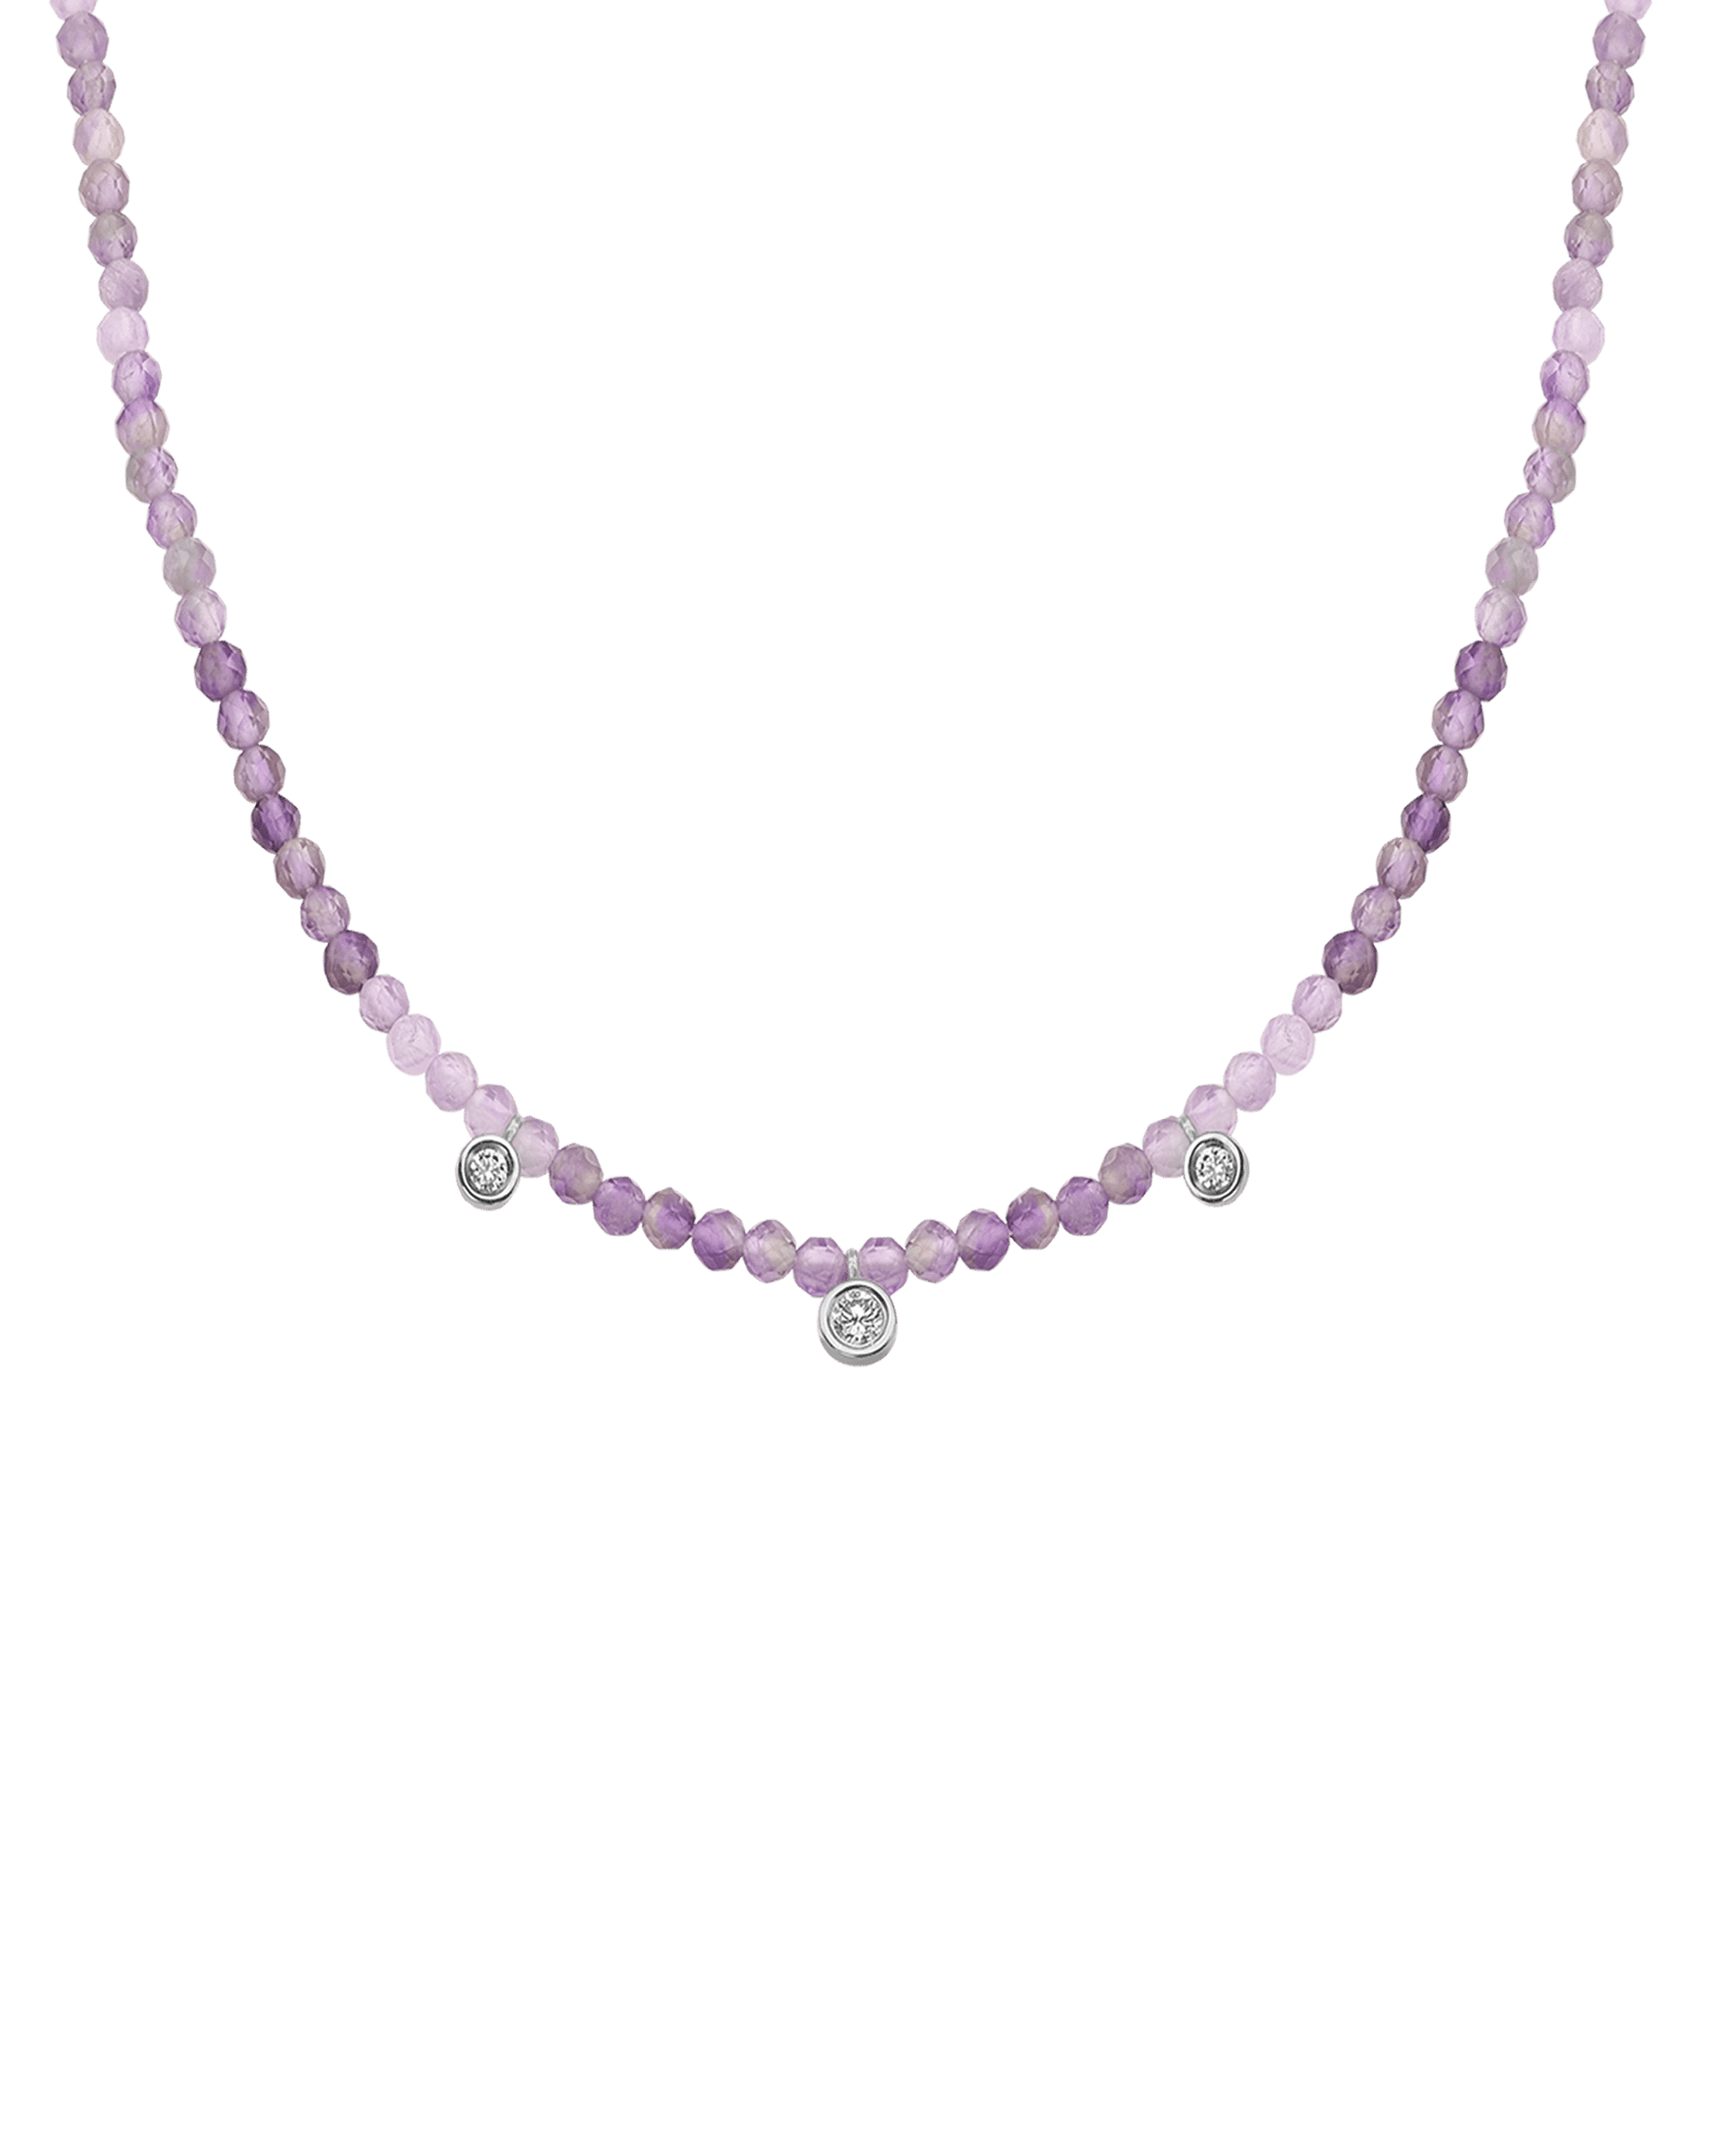 Colliers 3 Diamants & Pierres Précieuses - Or Blanc 14 carats Necklaces magal-dev Natural Purple Amethyst 35cm - Ras de Cou 